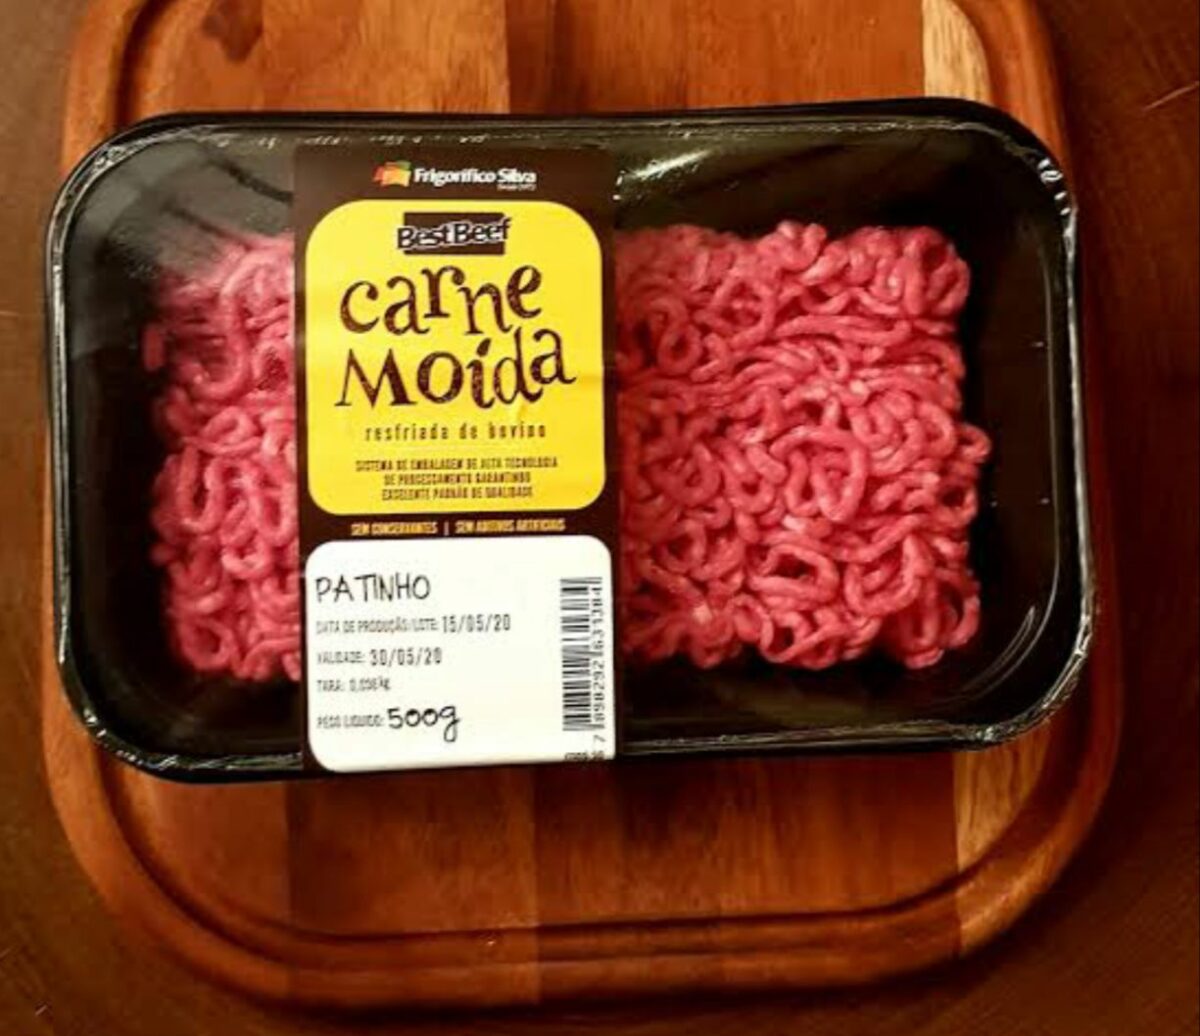 Novas regras podem levar carne moída com melhor qualidade à mesa do consumidor